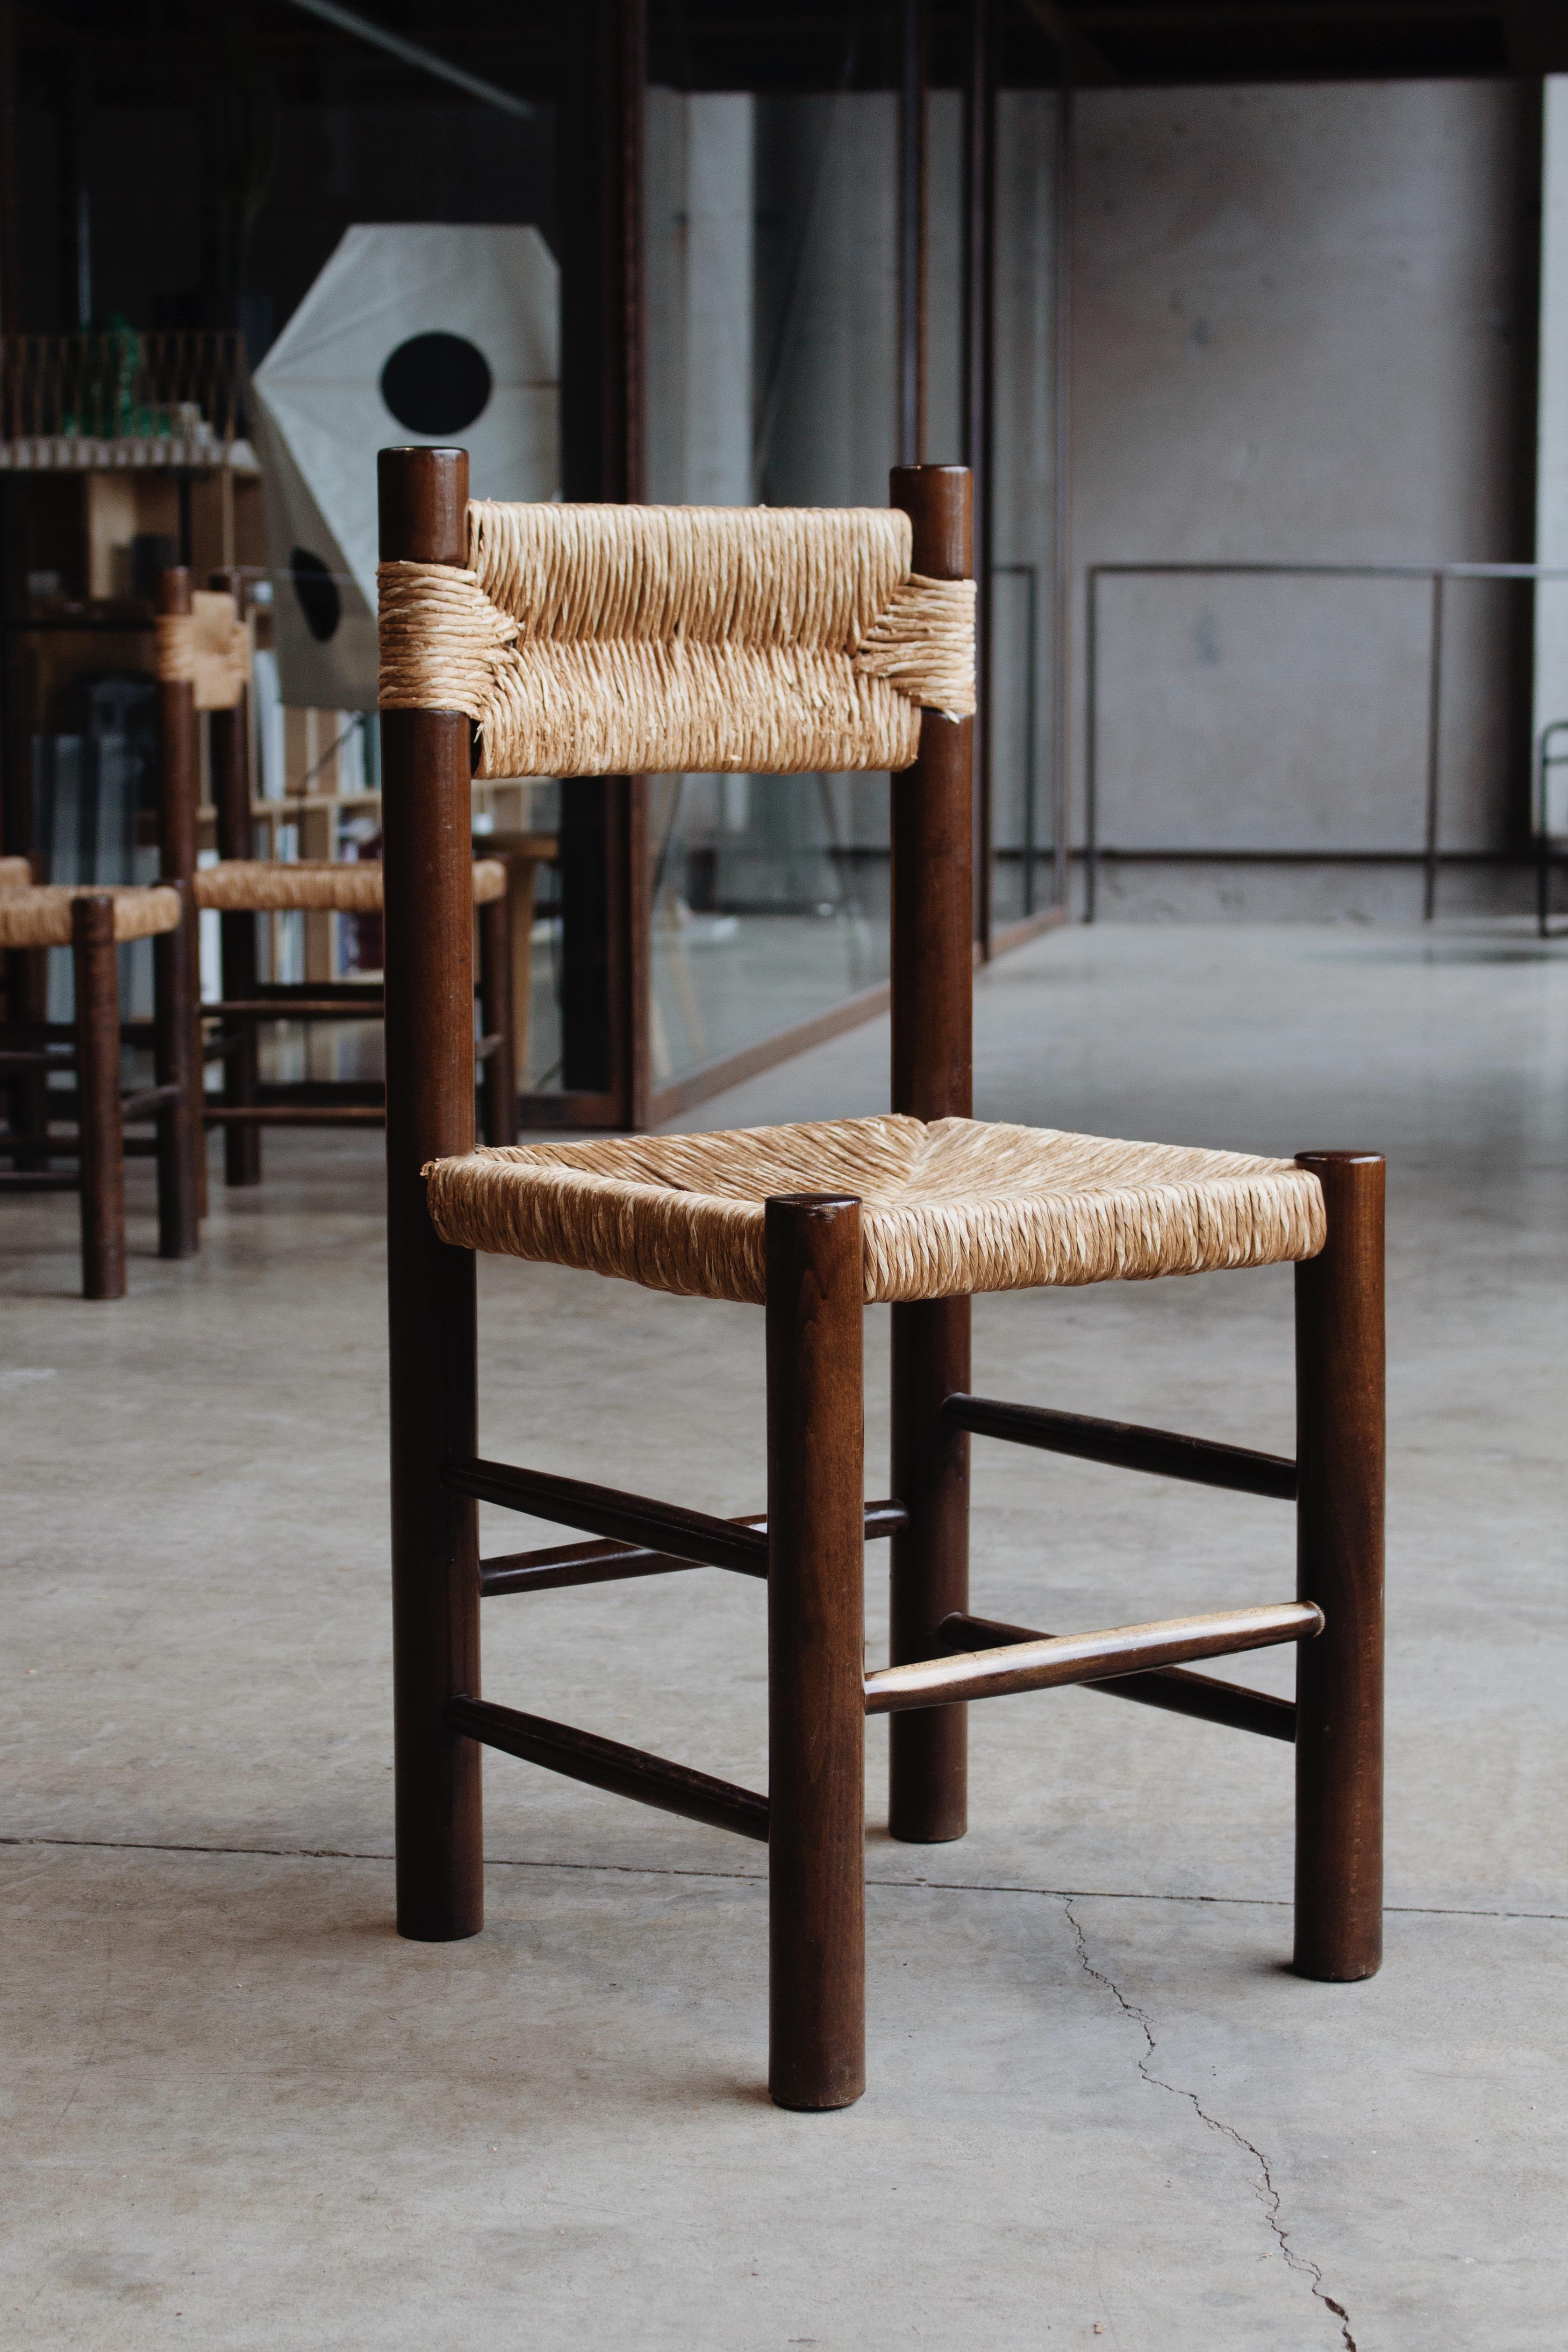 Chaises de salle à manger Charlotte Perriand pour Robert Sentou, paille et bois, France, 1964, ensemble de dix. 

Les chaises ont un design simple et intemporel. Le dossier et l'assise fantaisie en paille combinés à la structure en bois de pin